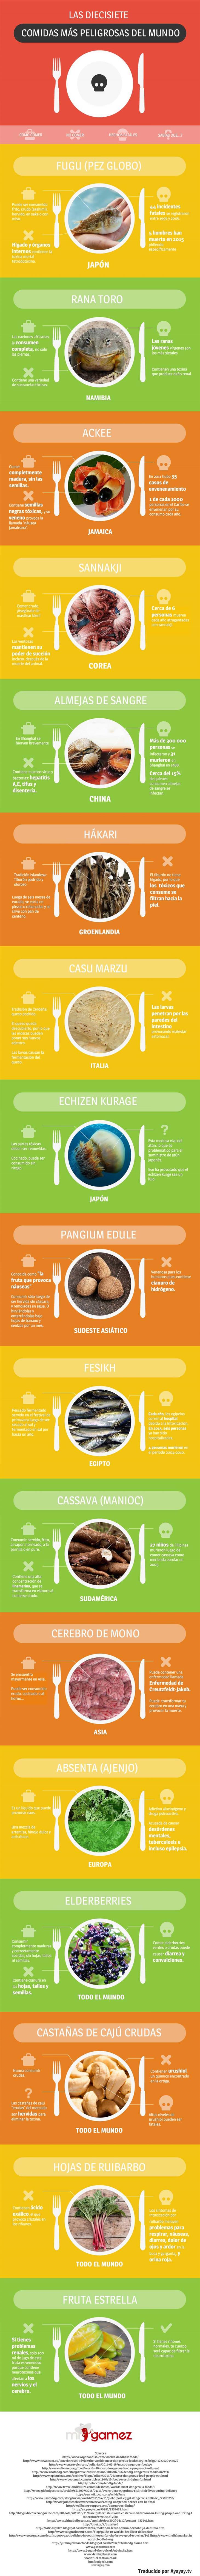 17 comida peligrosas infografía